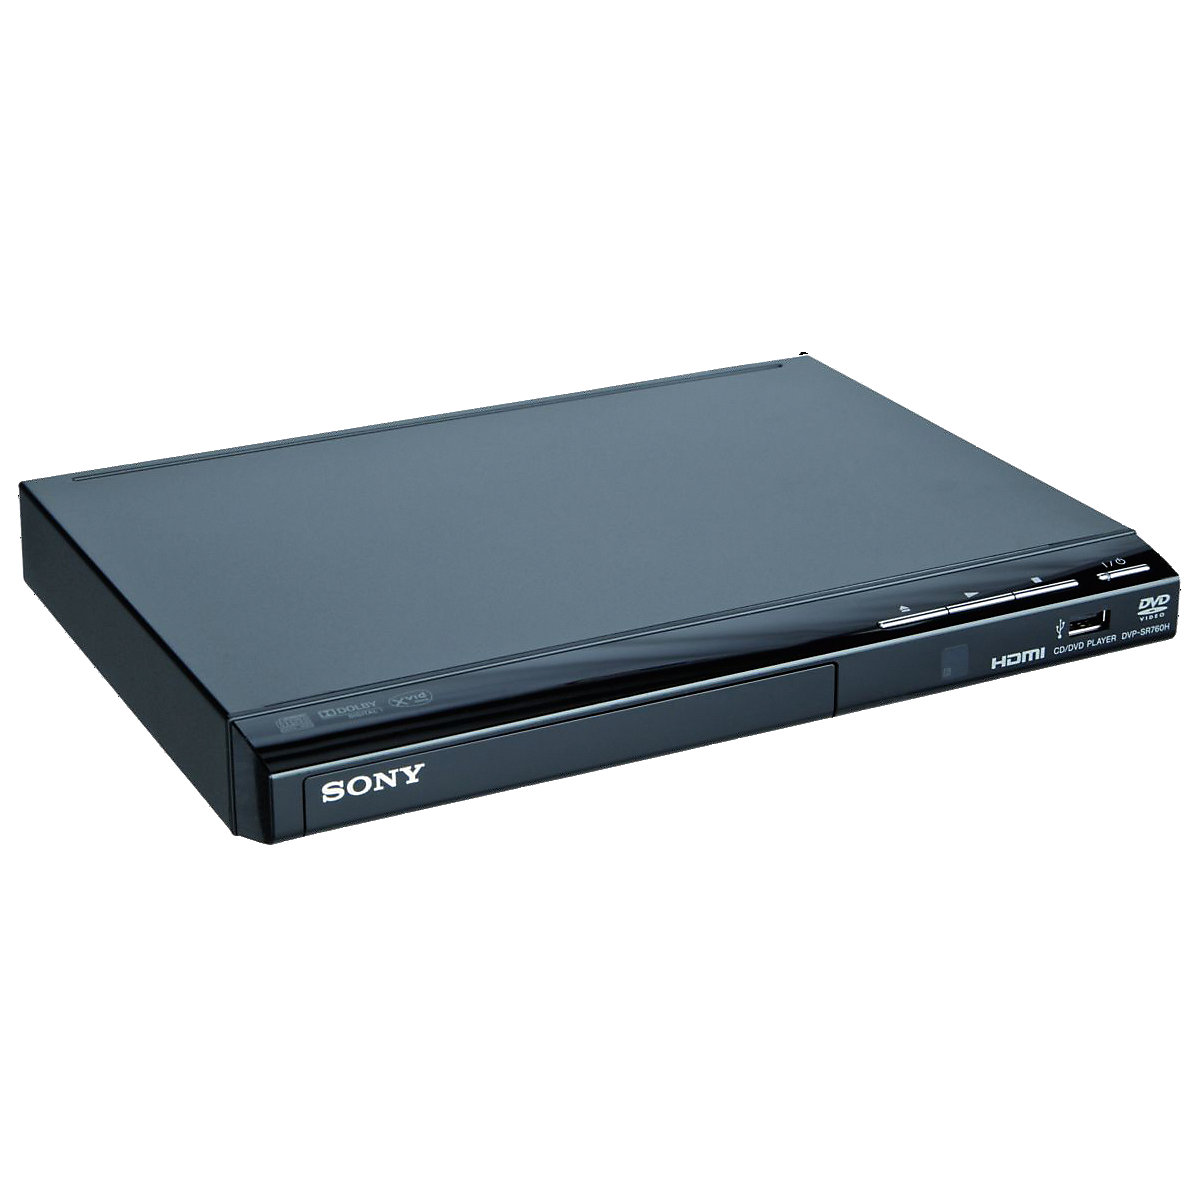 Sony DVD Player DVP-SR 760 HB.EC1